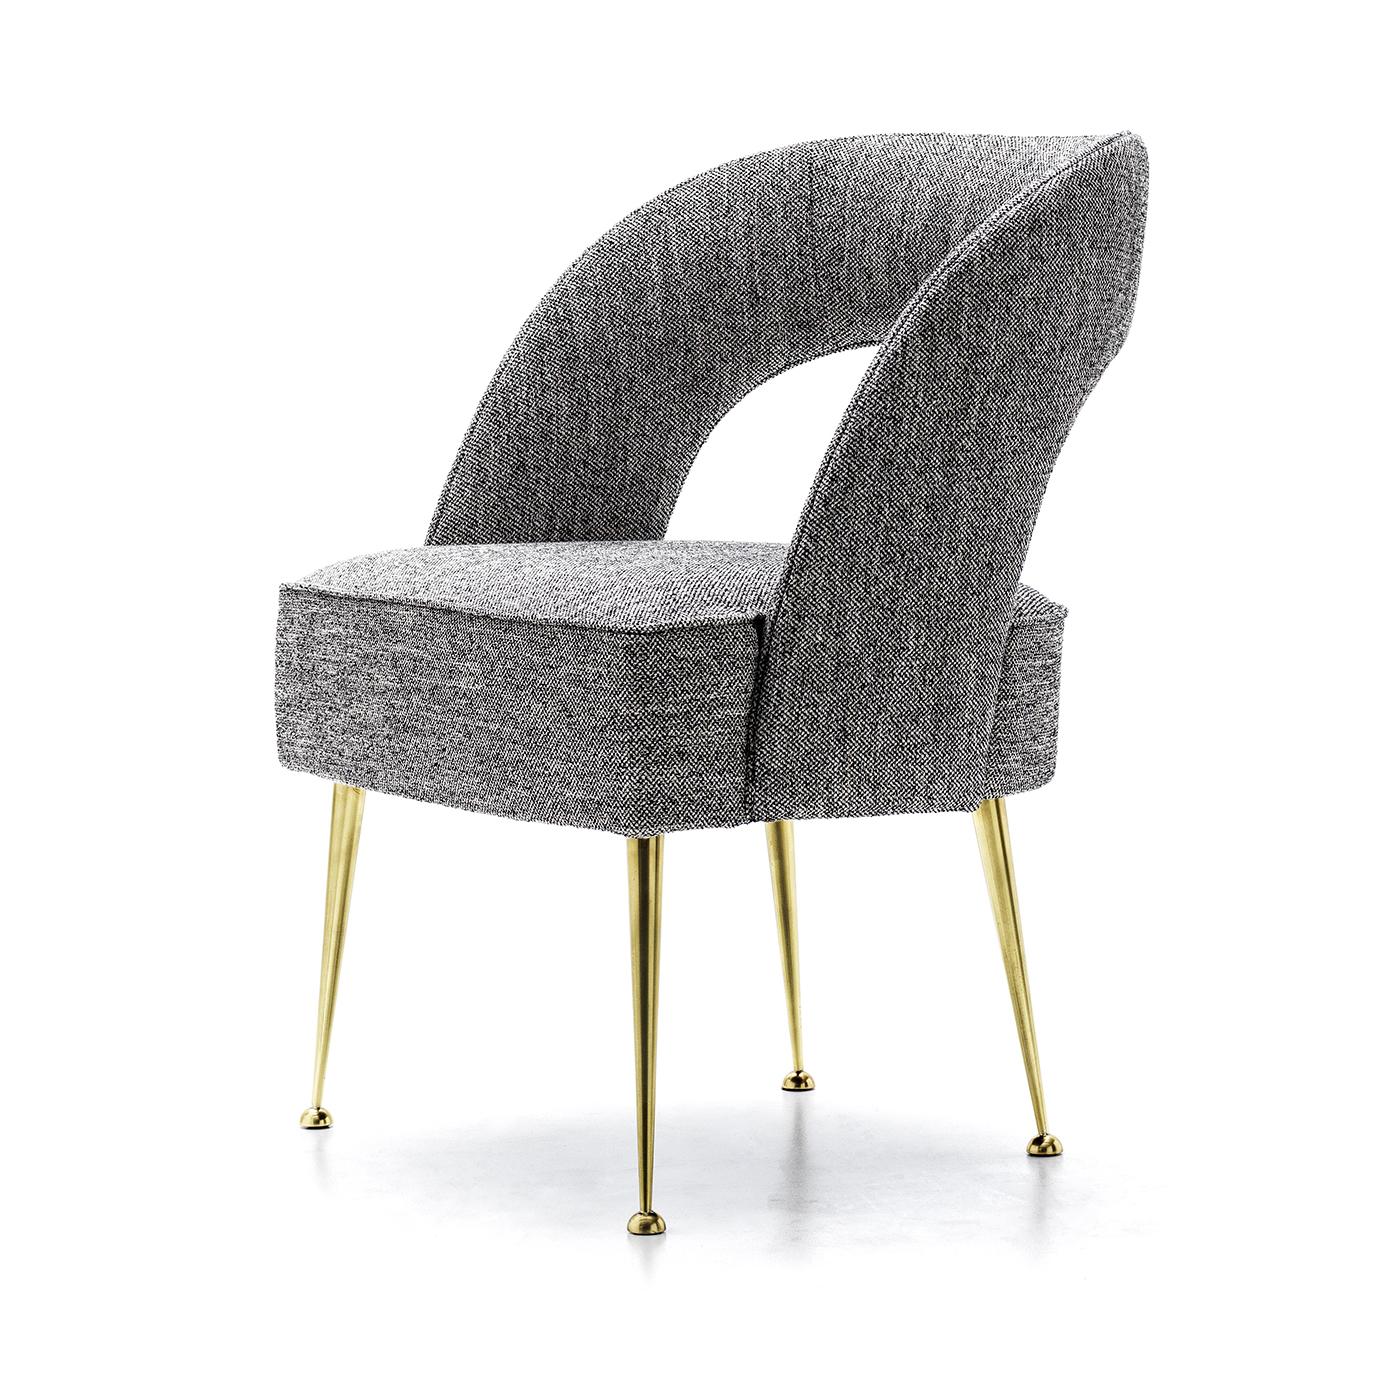 Der Danu Lounge Chair ist ein poliertes Stück mit Stoffbezug und luxuriösen Messingbeinen. Es ist ein fantastisches Werk, das sich überall einfügt, von neuen, modernen Häusern bis hin zu klassischen Wohnräumen. Der bequeme Sitzkomfort und die